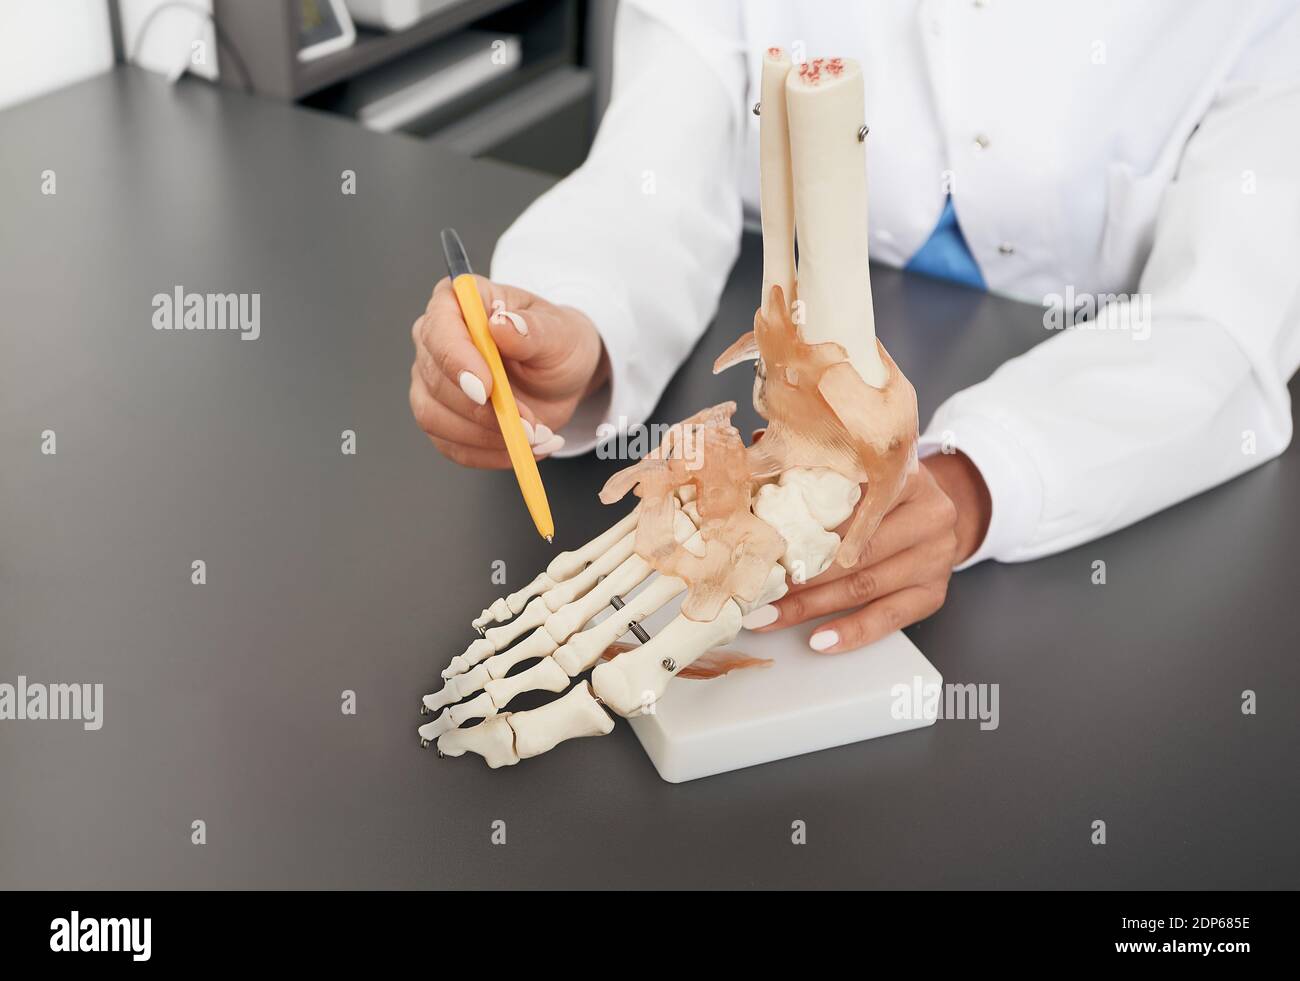 Der Arzt Orthopäden zeigt das anatomische Modell des Fußes. Arthritis, Fussverletzungen, Plattfüße und Schmerzen Stockfoto